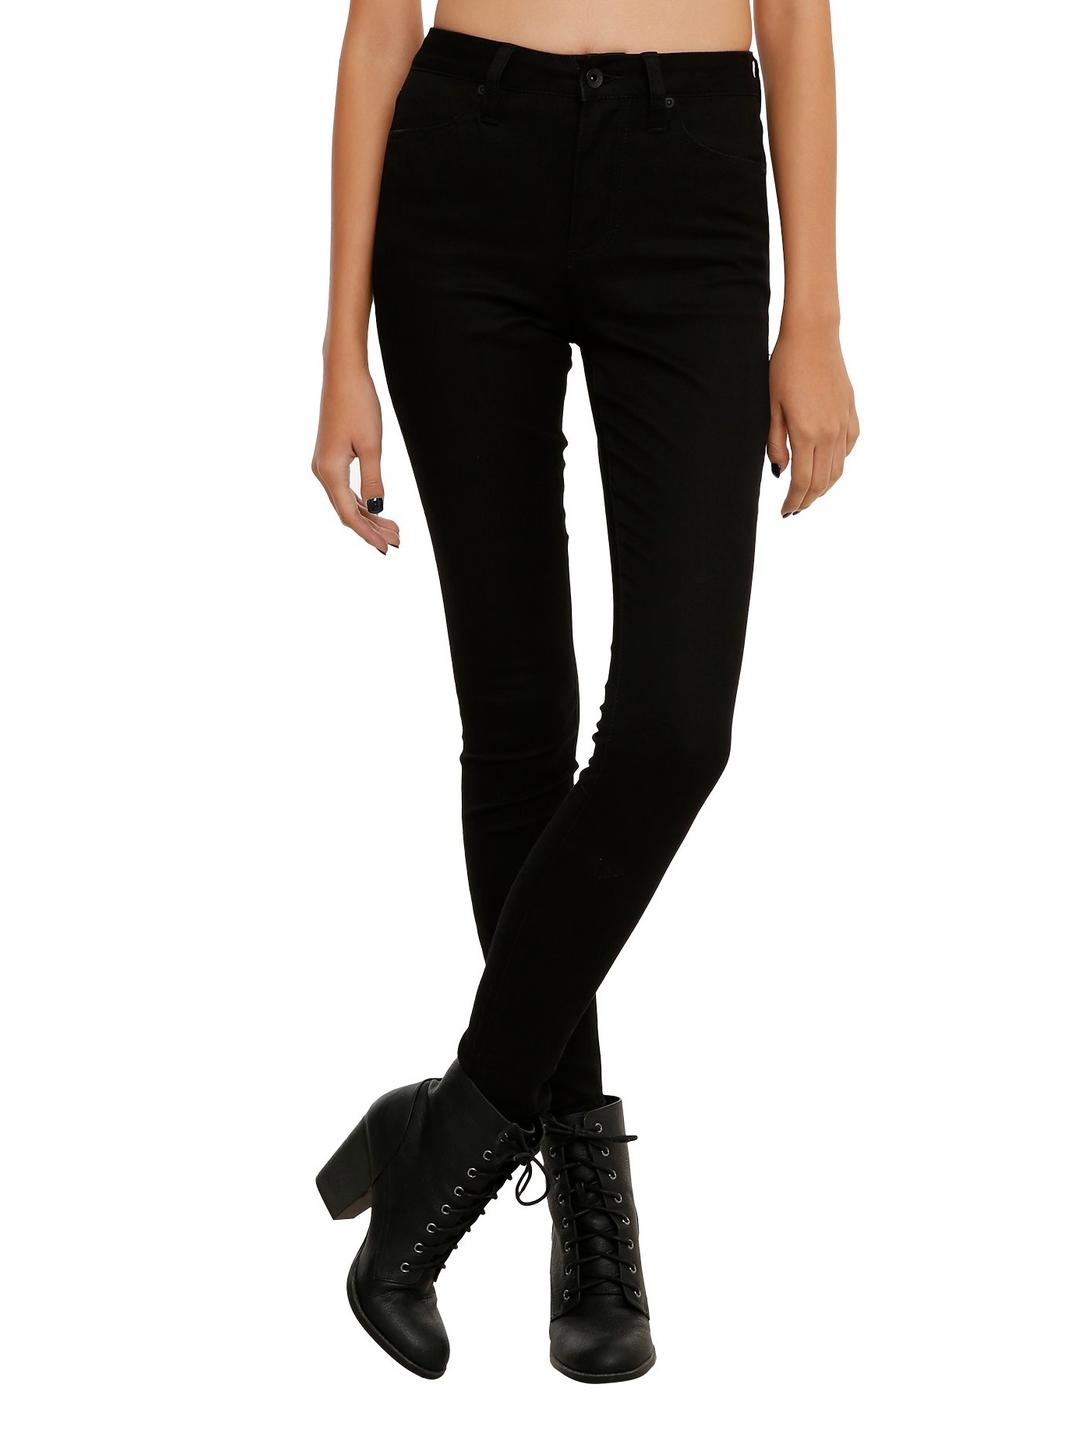 LOVEsick Black High-Waist Super Skinny Jeans, BLACK, hi-res